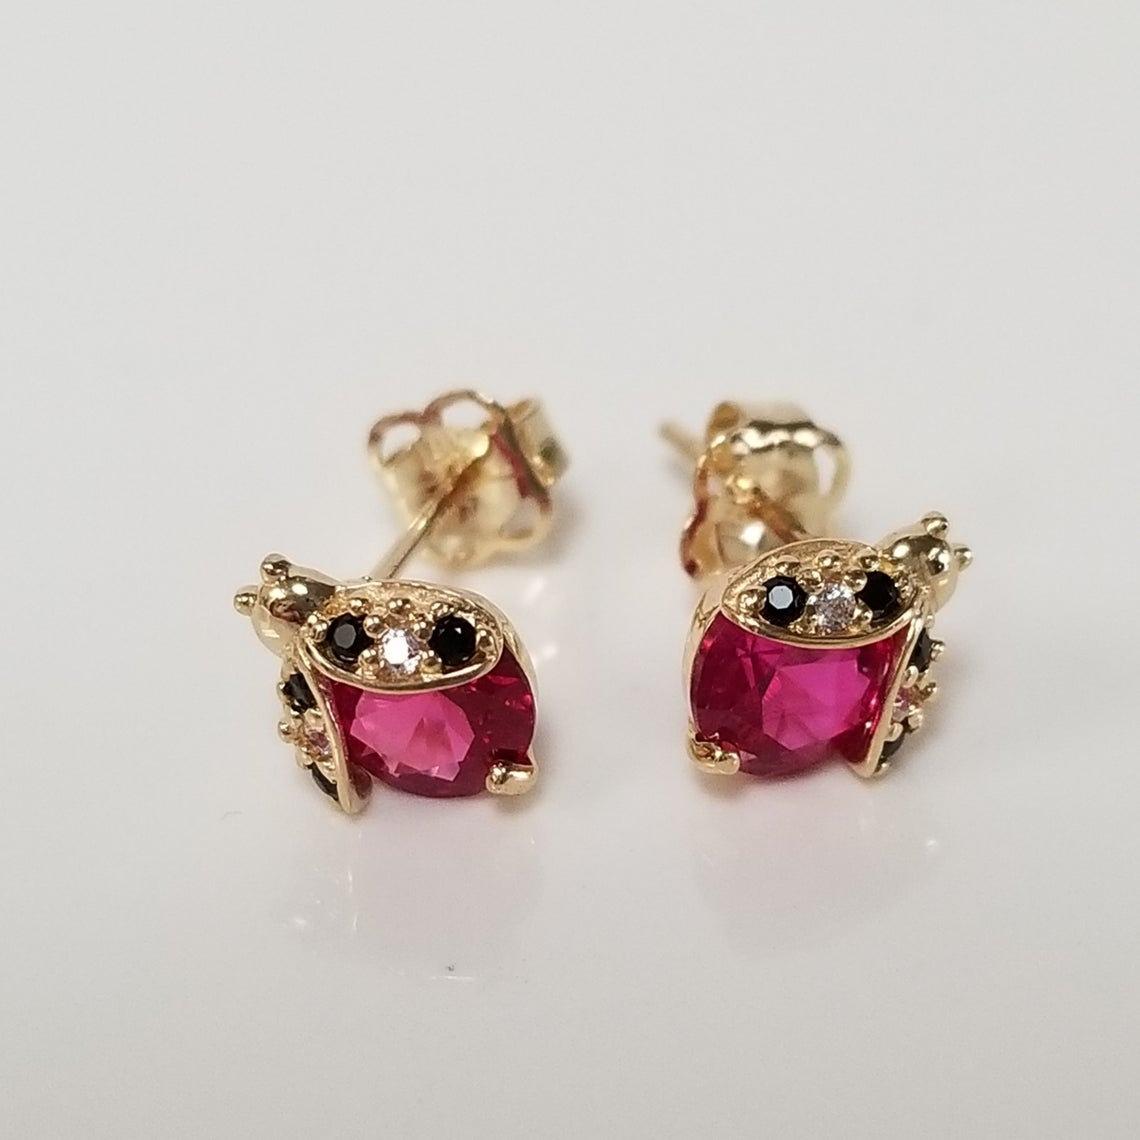 Girls' Ladybug Earrings 14/20 14k Gold Filled w/ LuxLock Backs 